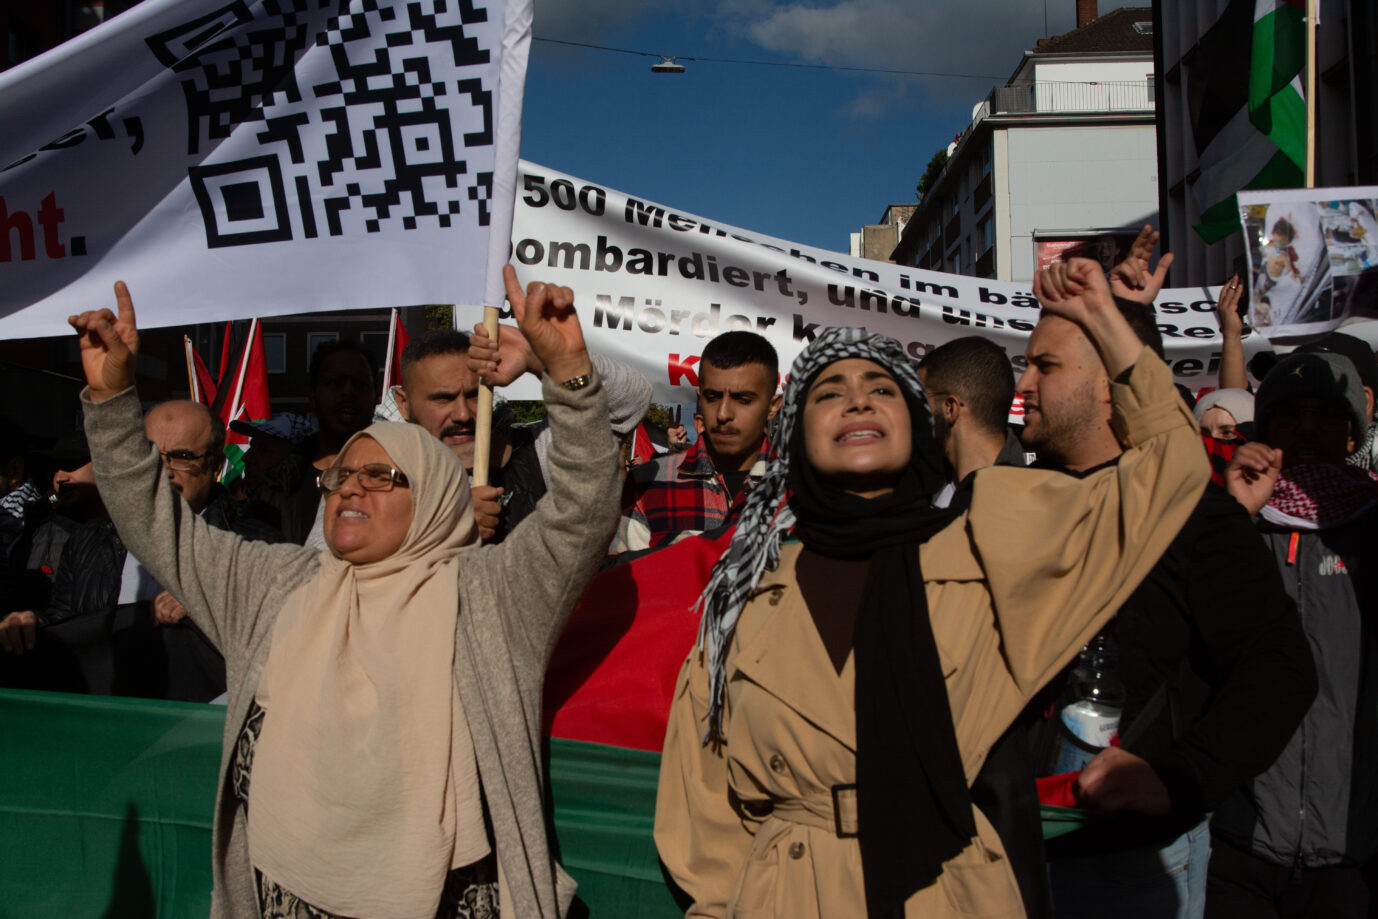 Auf dem Foto befindet sich eine Pro-Hamas-Demonstration in Düsseldorf. (Themenbild)